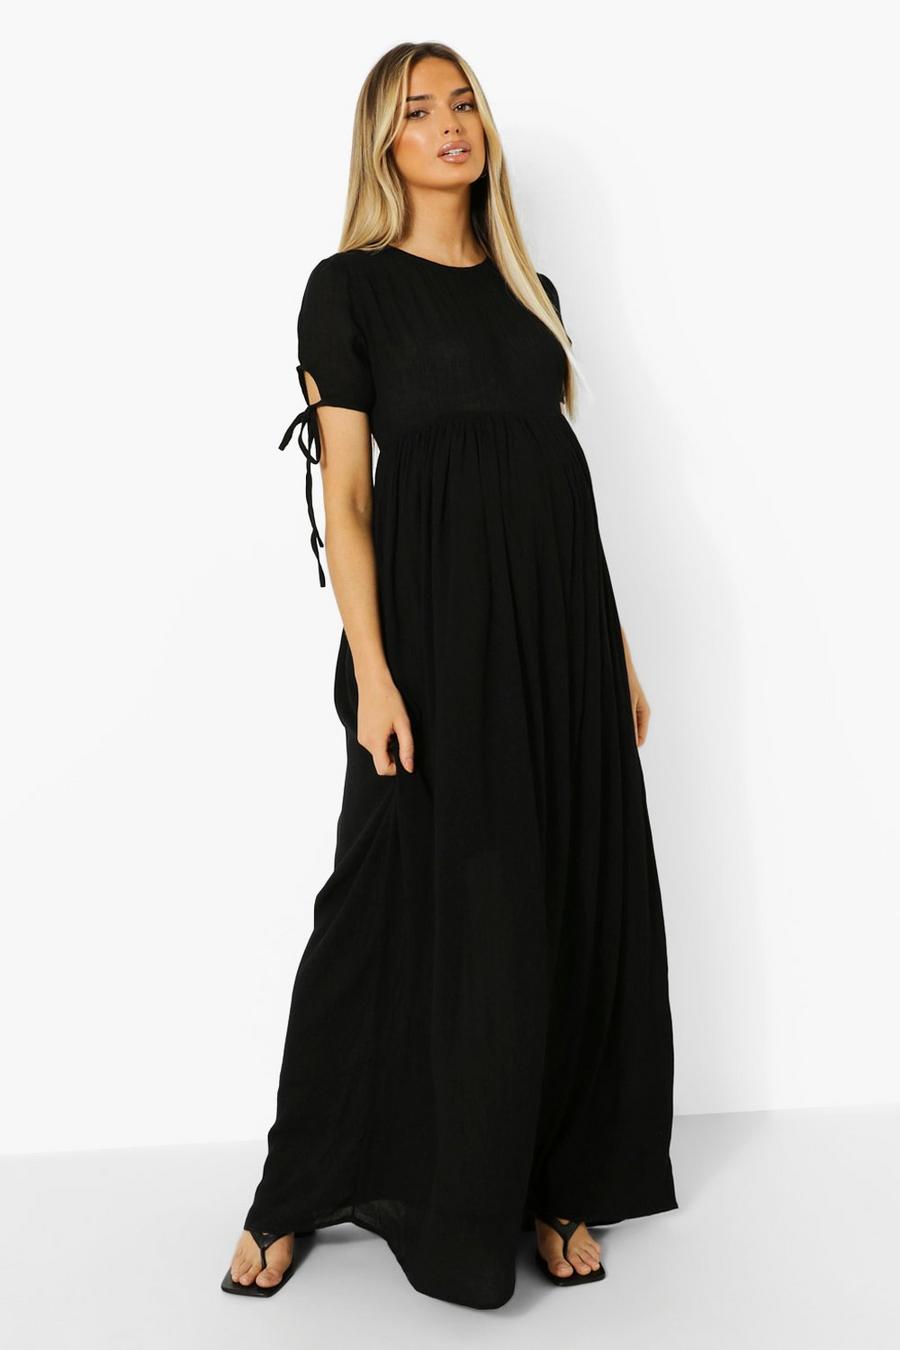 שחור nero שמלת מקסי מבד אוורירי עם קשירה בשרוולים להיריון